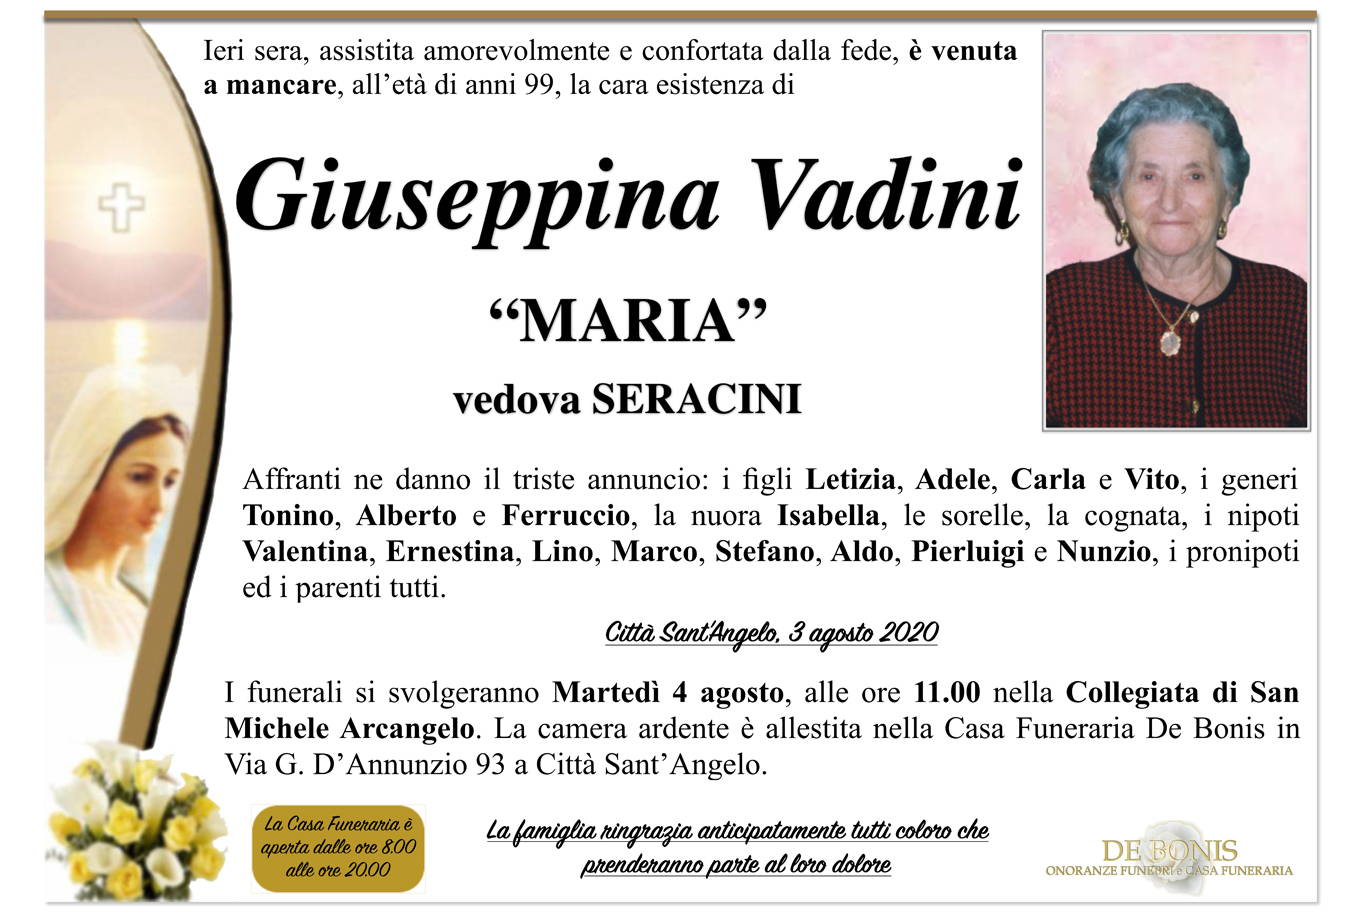 Giuseppina Vadini